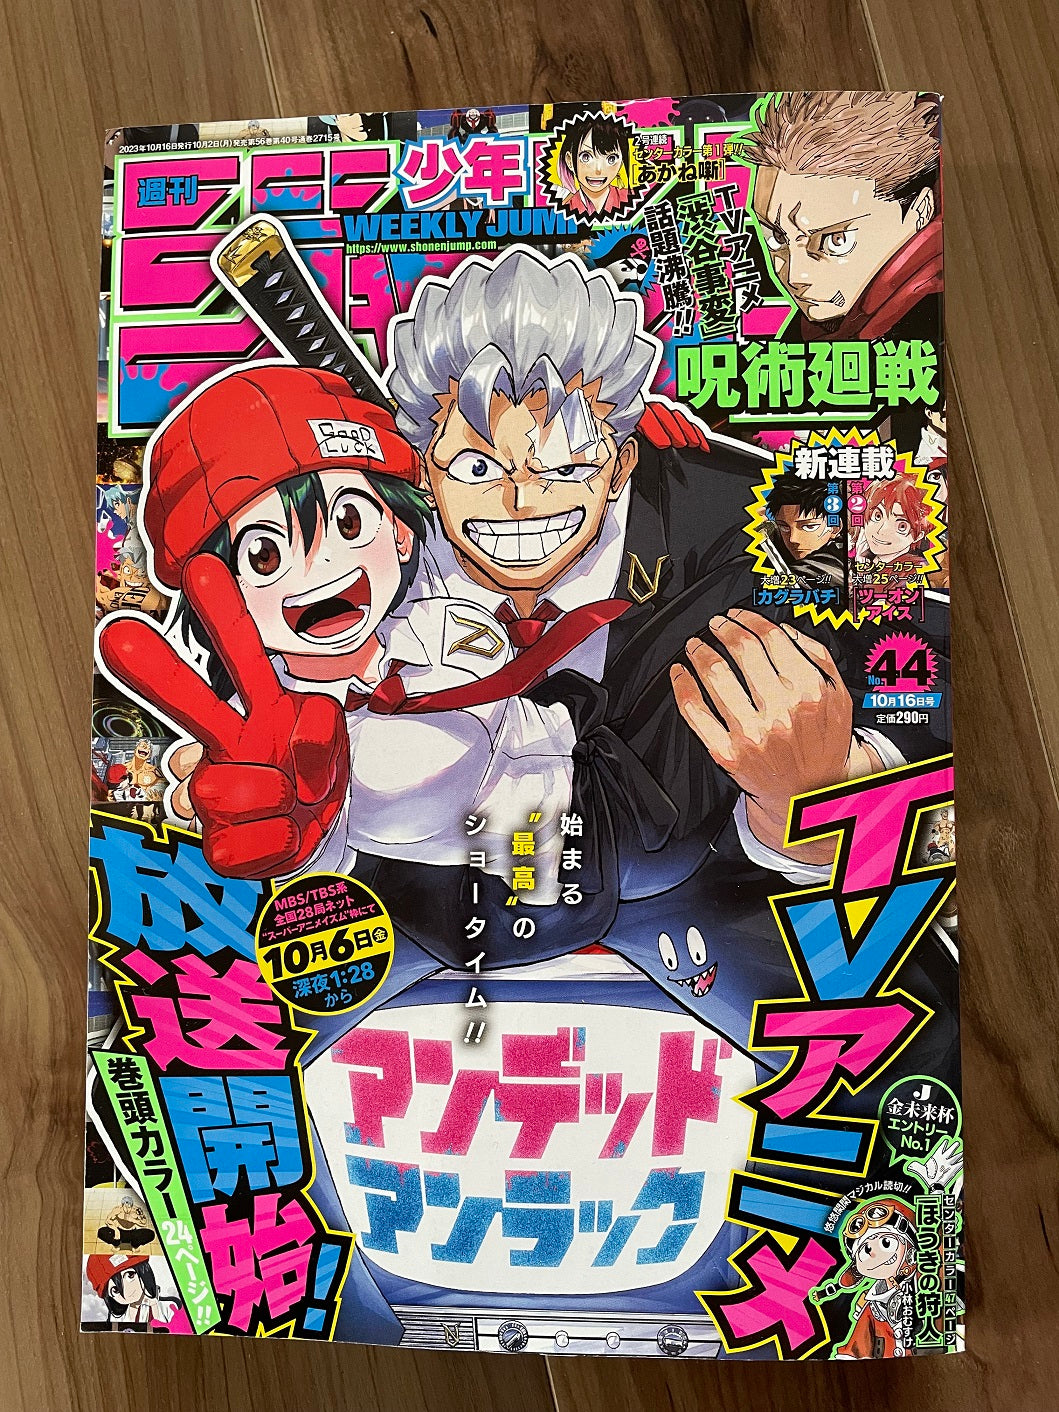 Weekly Shonen Jump Manga Issue 44 2023 Buy